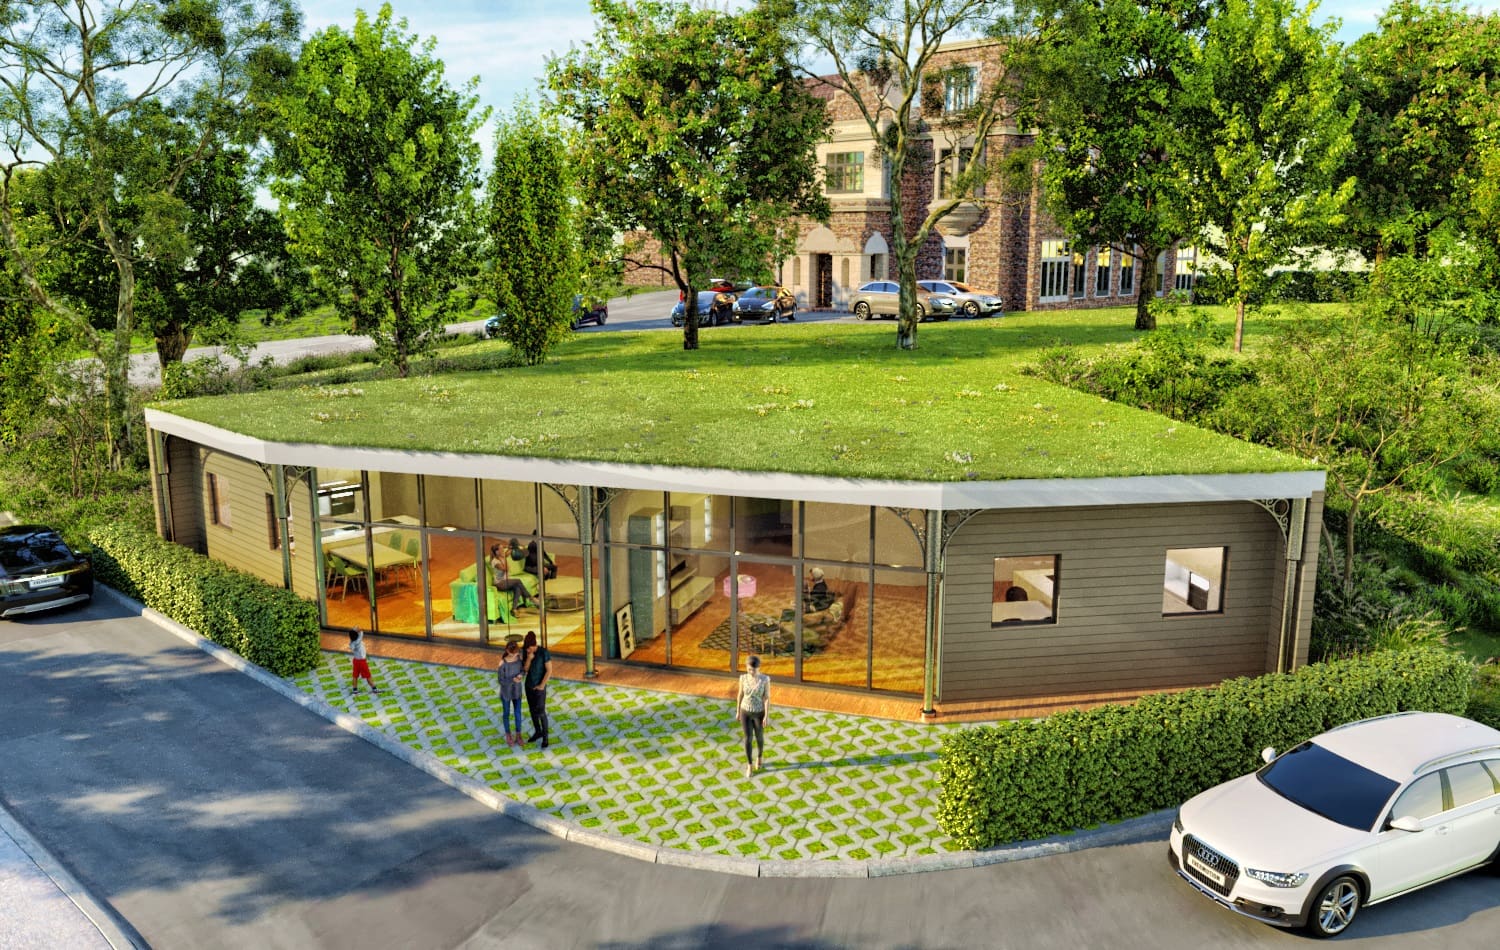 Café Exterior 3D Architectural Visualization